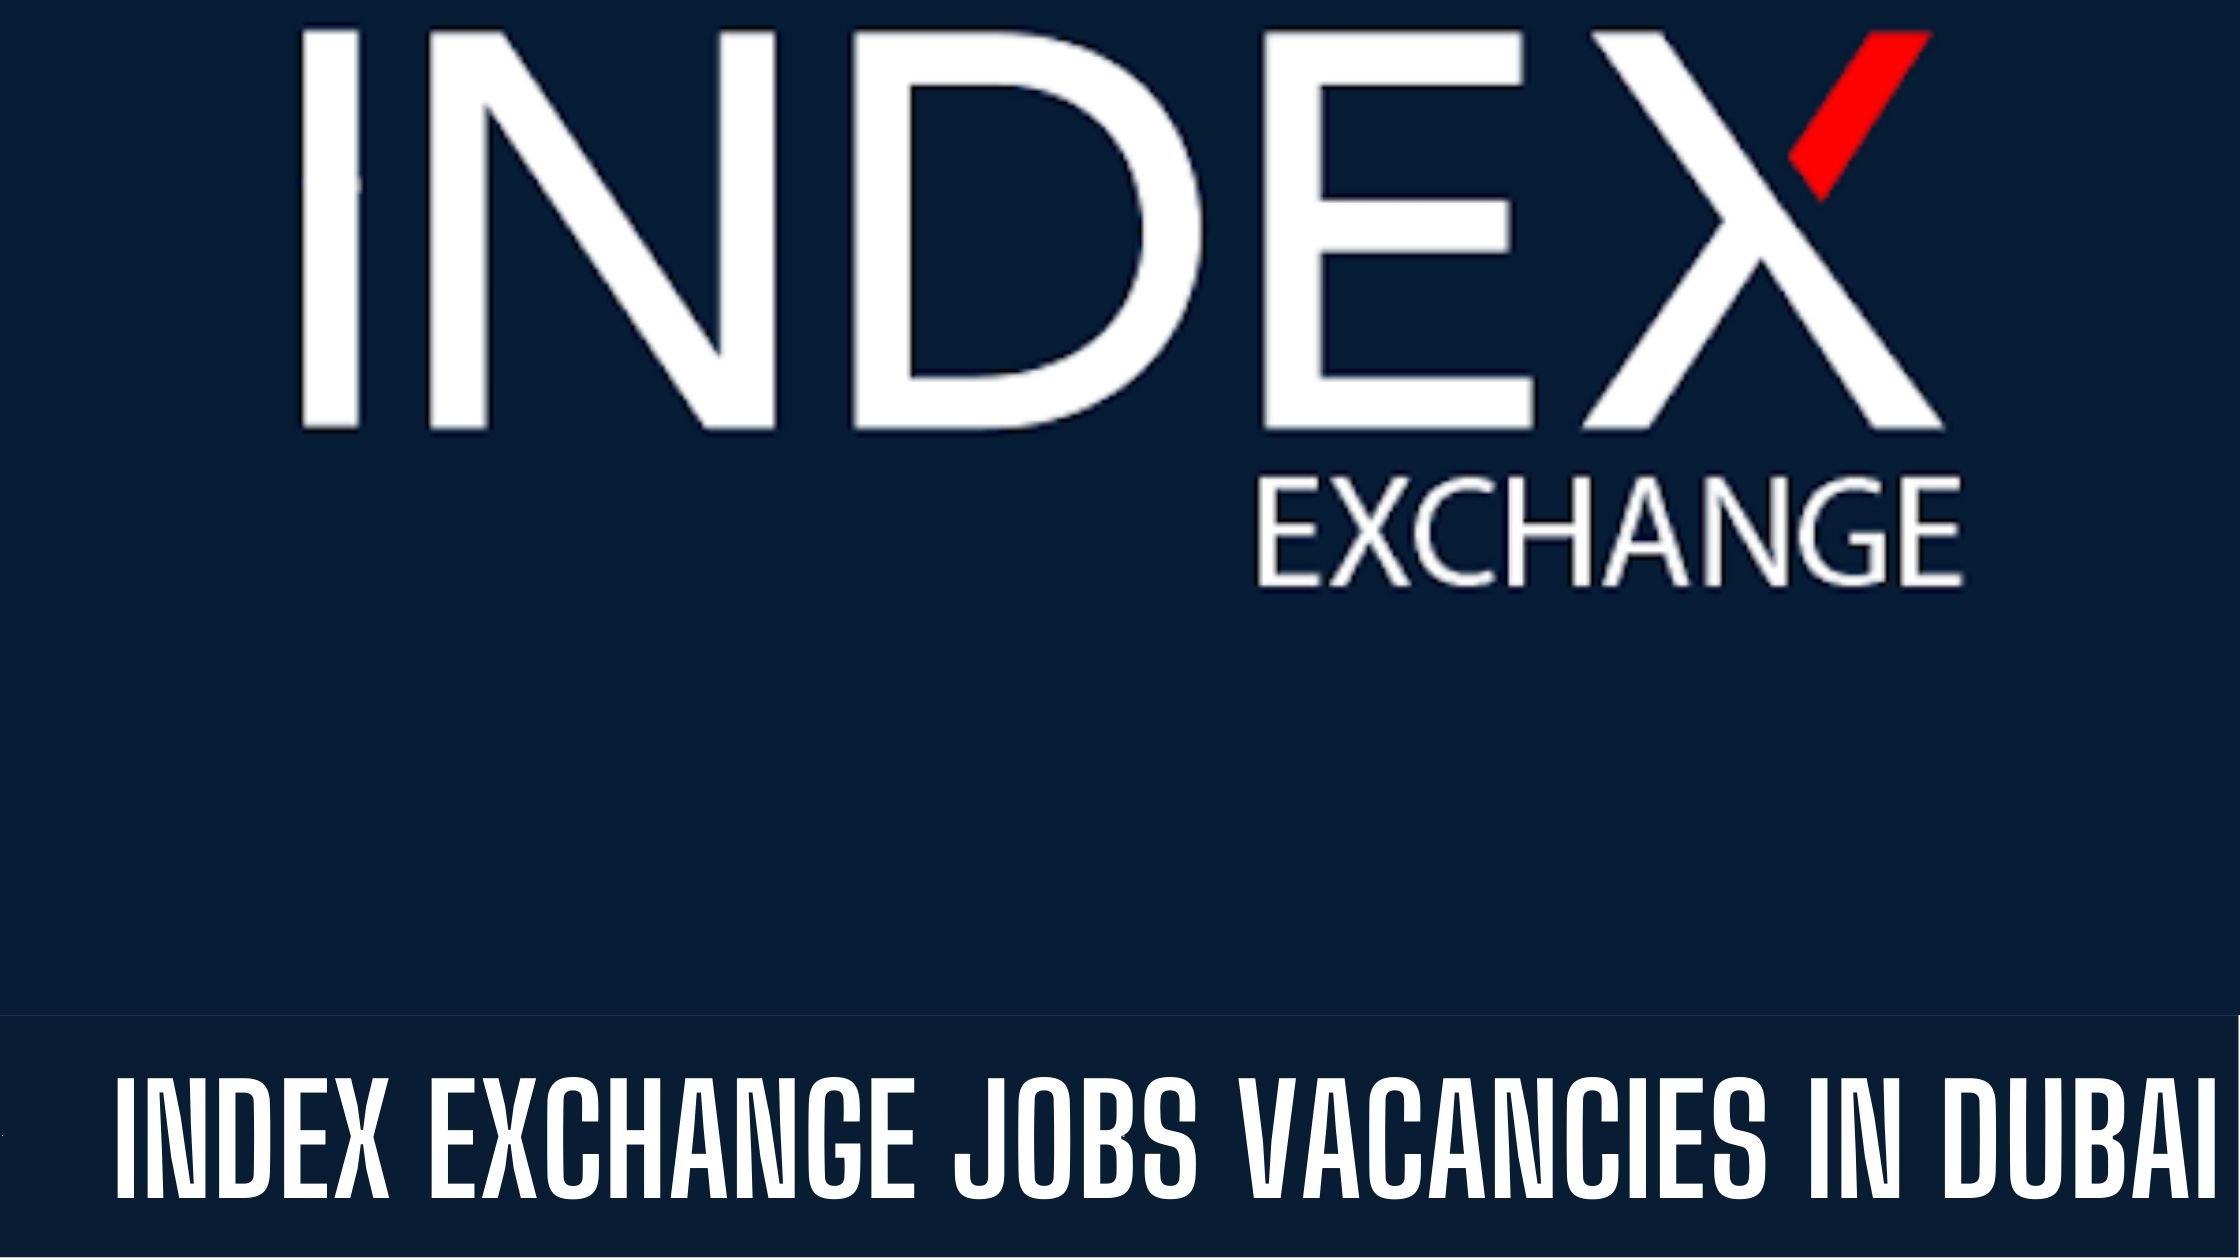 INDEX EXCHANGE JOB